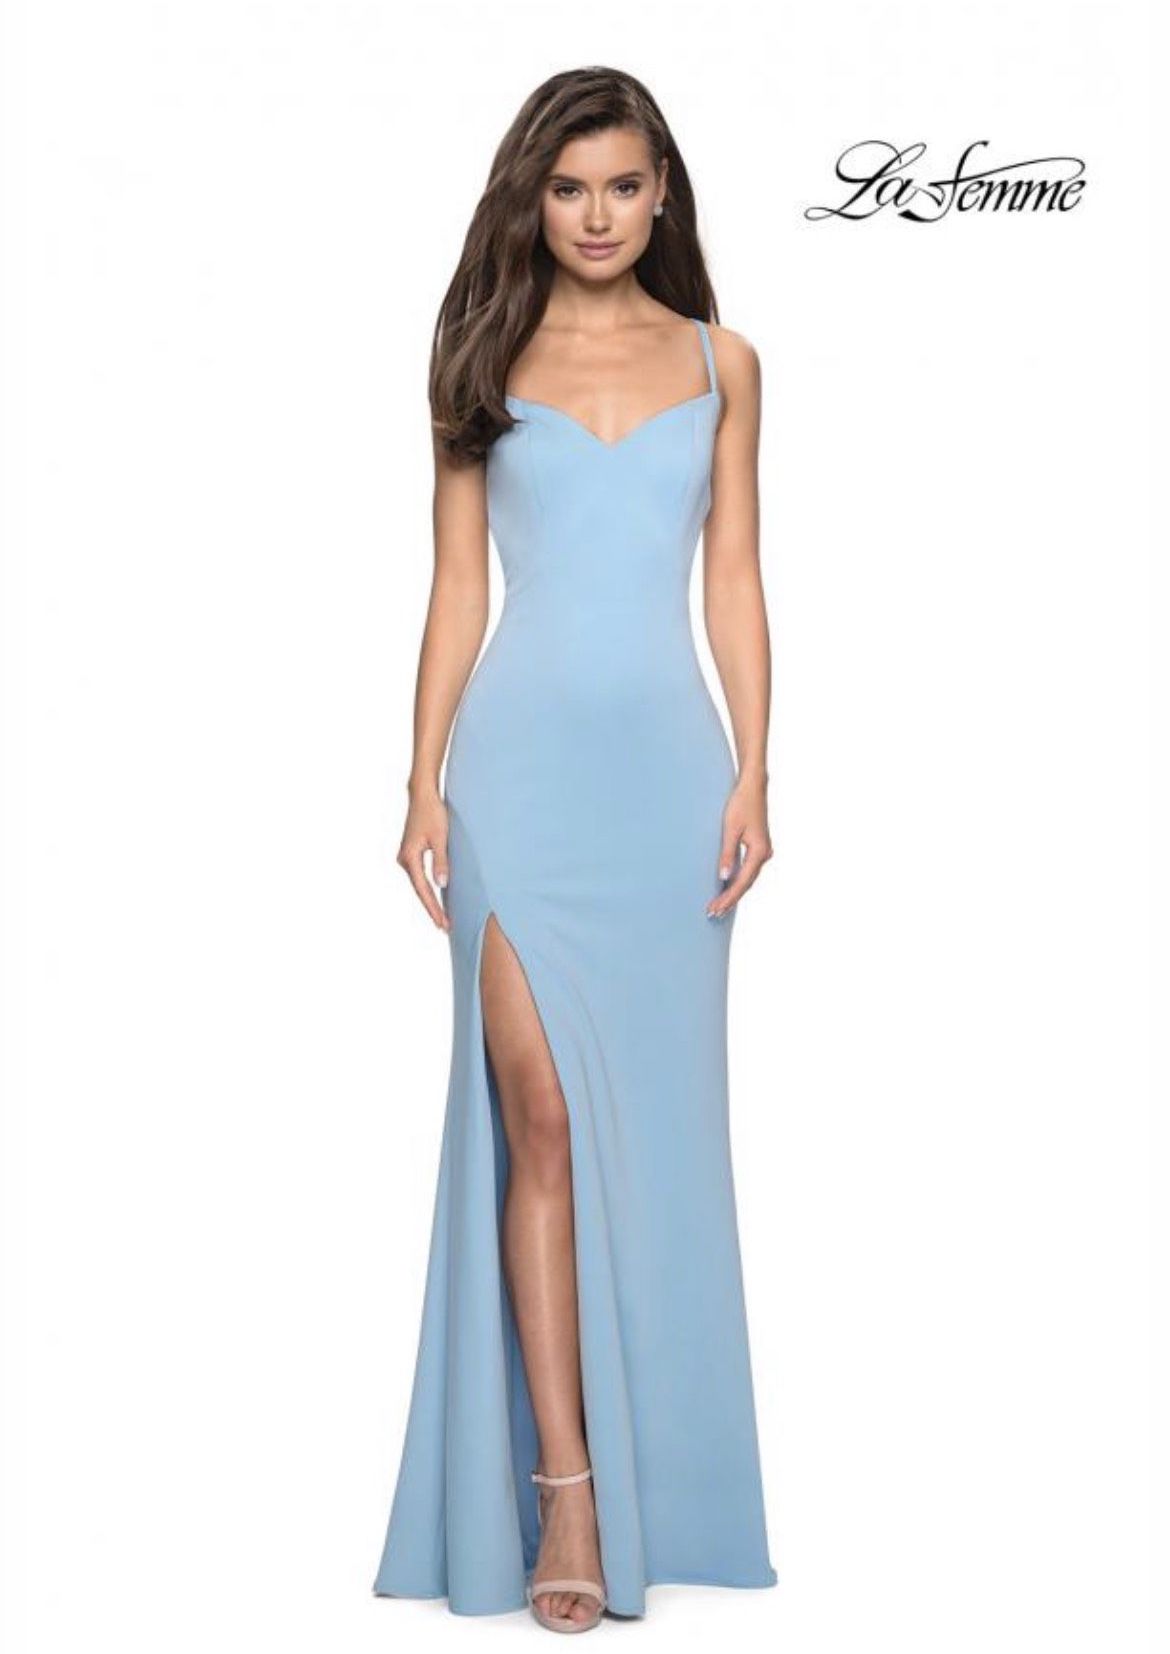 La Femme Size 2 Bridesmaid Light Blue Side Slit Dress on Queenly